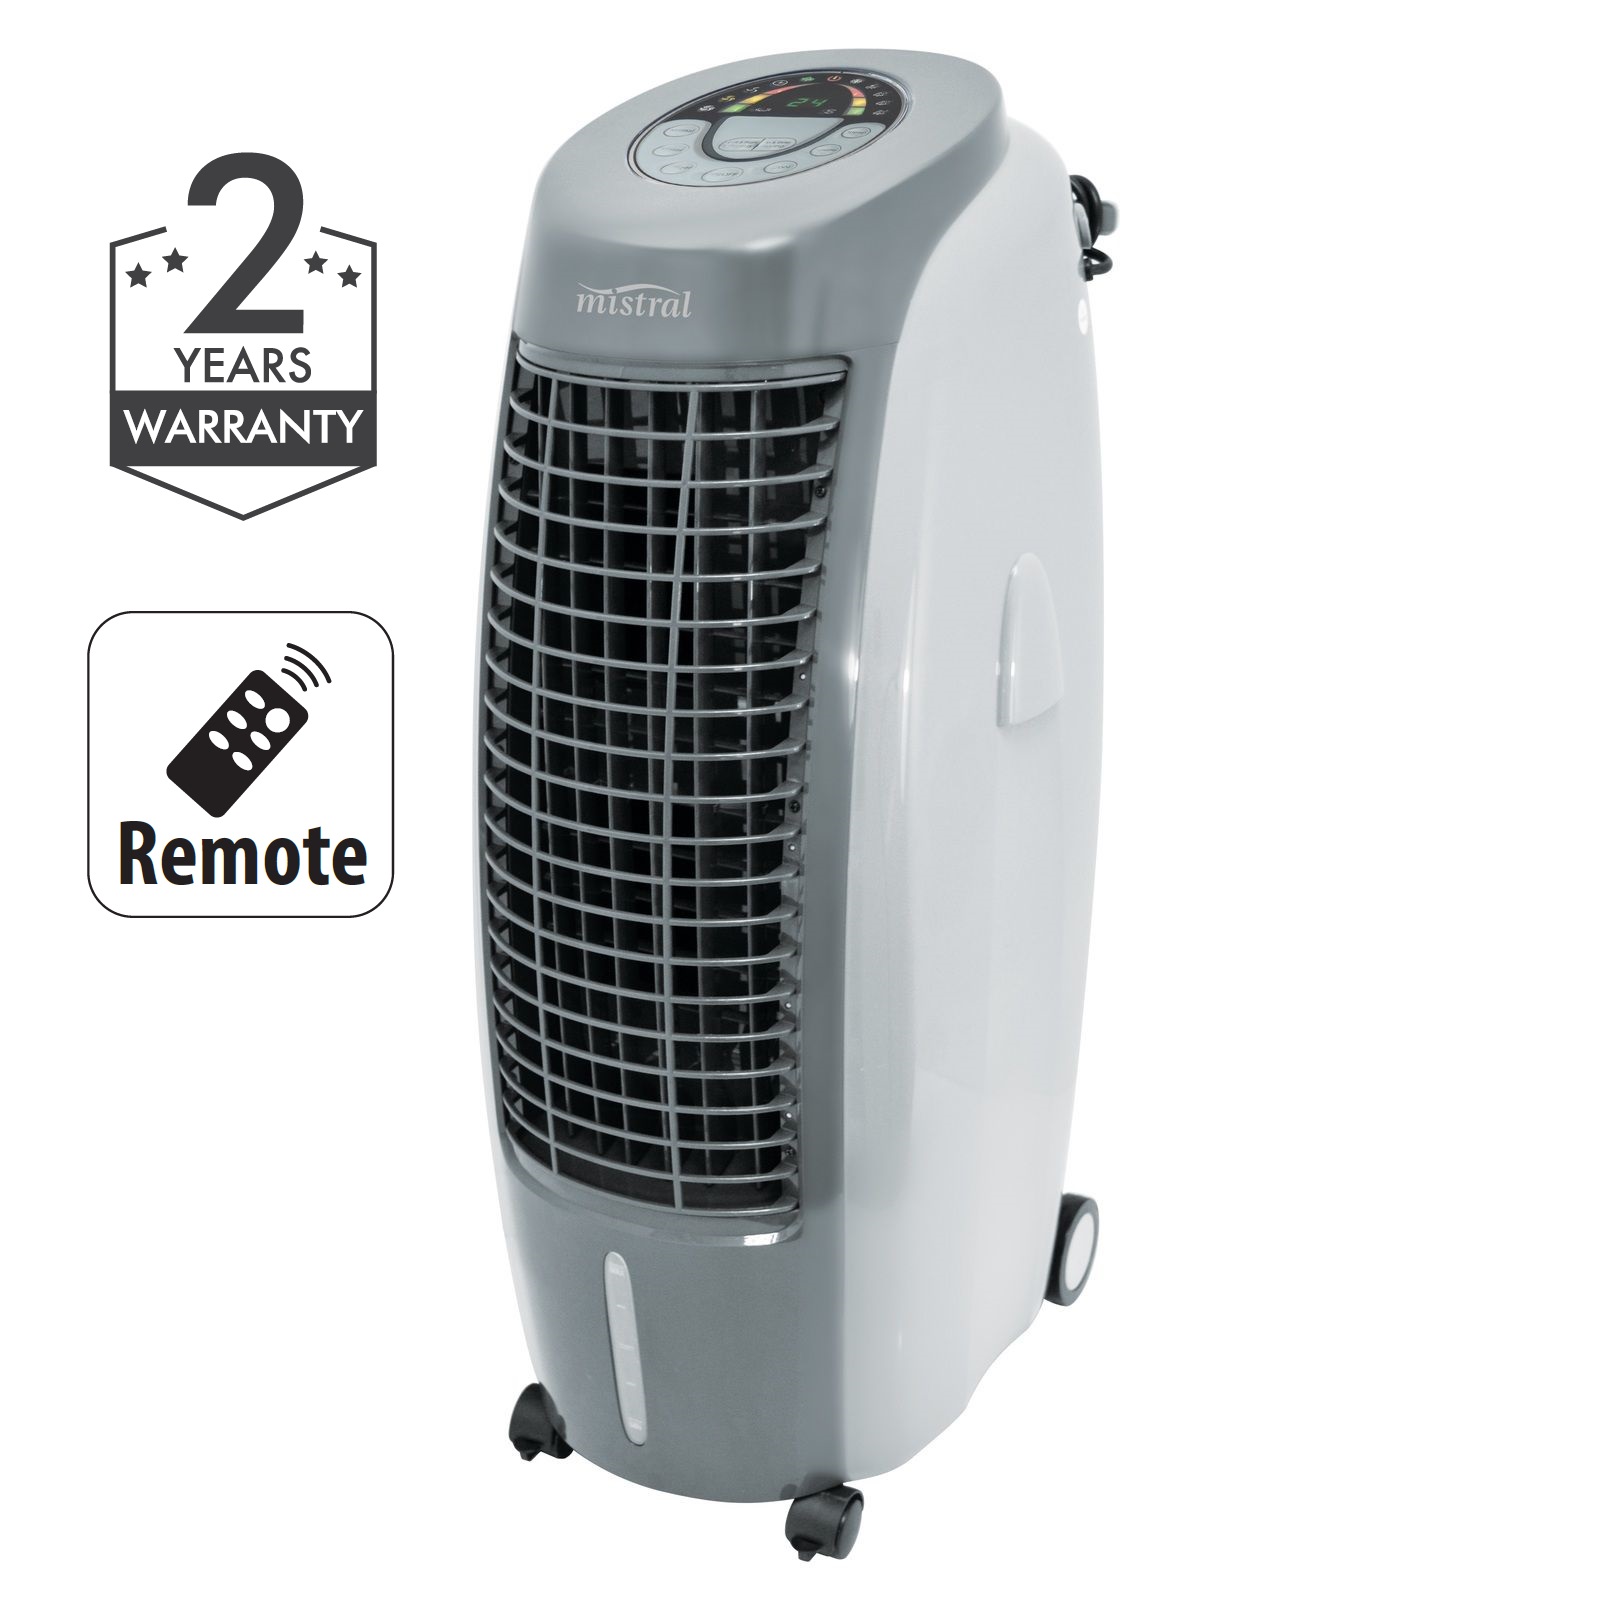 Испарительный охладитель воздуха. Охладитель воздуха Air Cooler Kc-40. Охладитель-увлажнитель воздуха испарительный. Воздухоохладитель Air Cooler dd250.